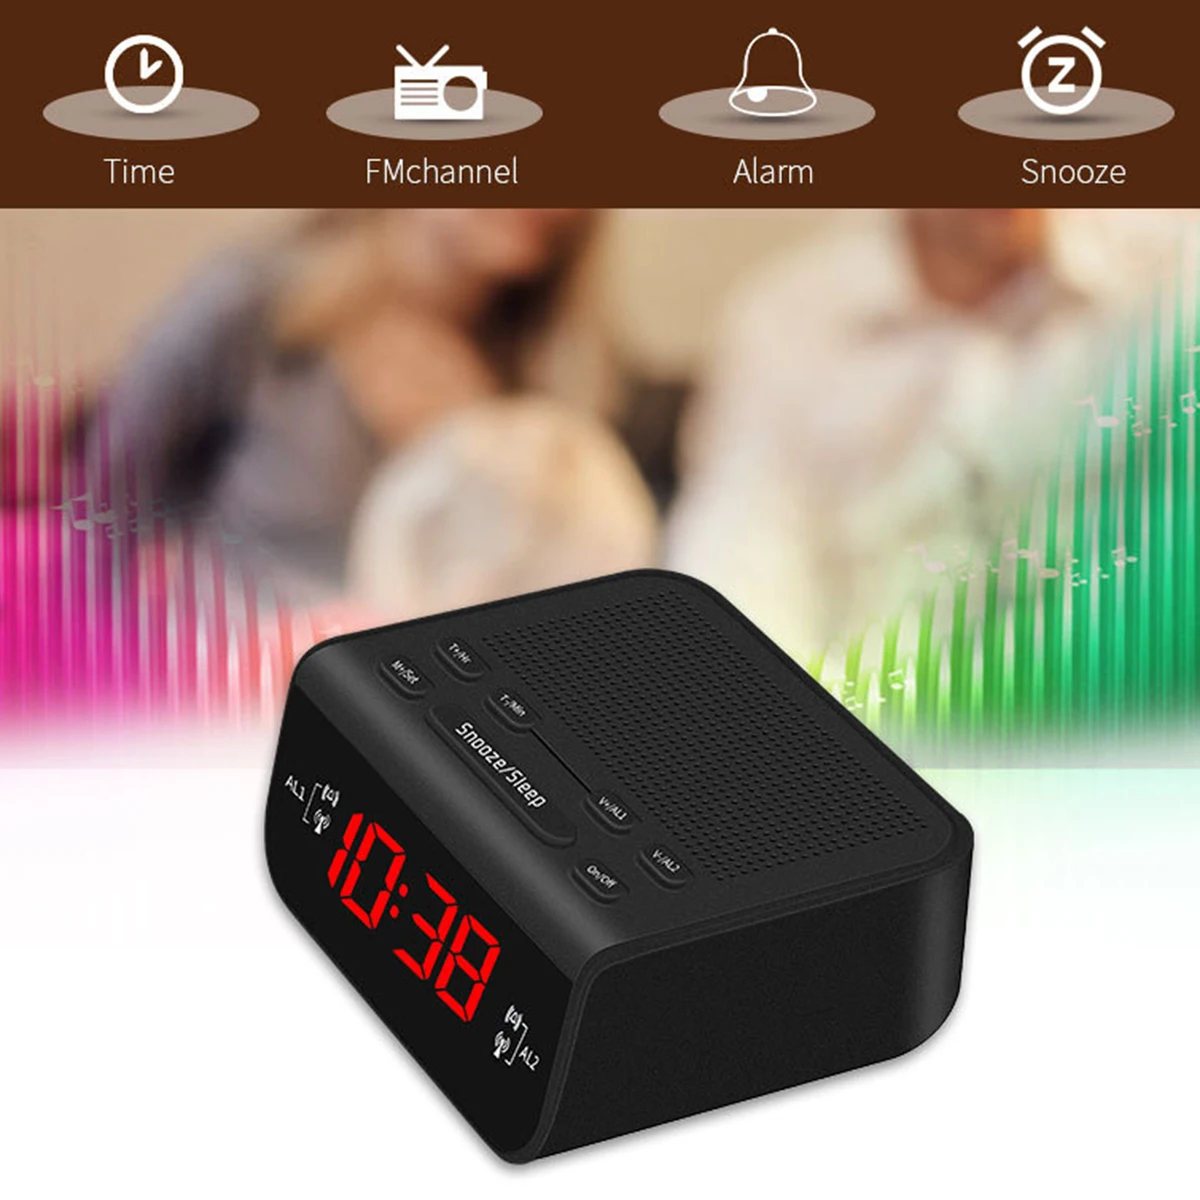 

Radio Clock Digital Time Alarm Clocks Radio Multi-Function FM Radios LED Display With EU Plug Sleep Function 24 Hours